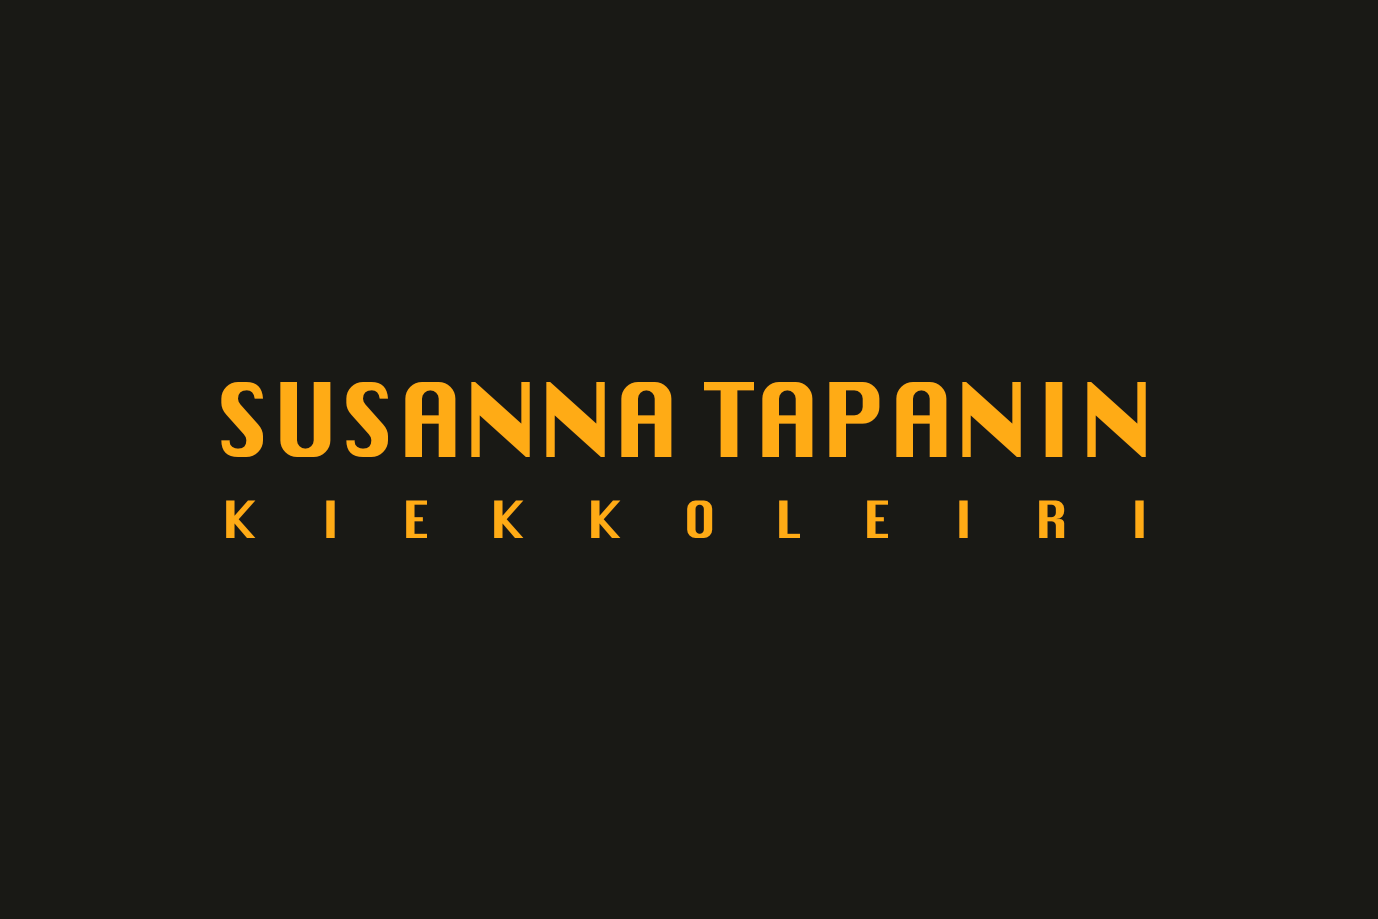 Susanna Tapanin kiekkoleiri tytöille 18.-19.10.2018